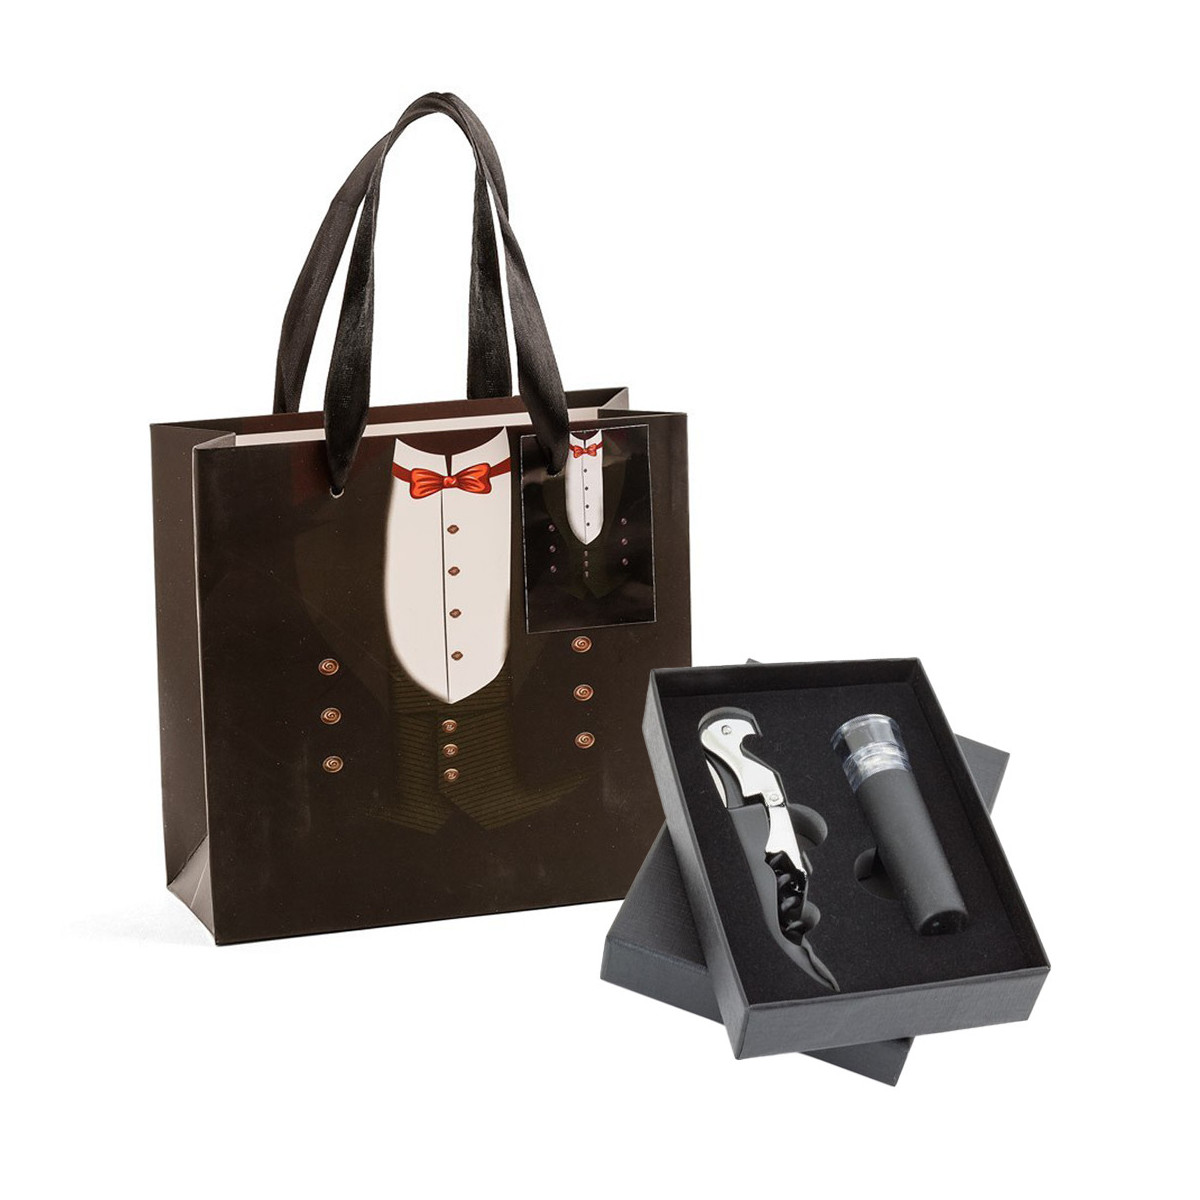 Rolha de vinho com bomba de vácuo e abridor de garrafas apresentada em caixa preta e bolsa de casamento